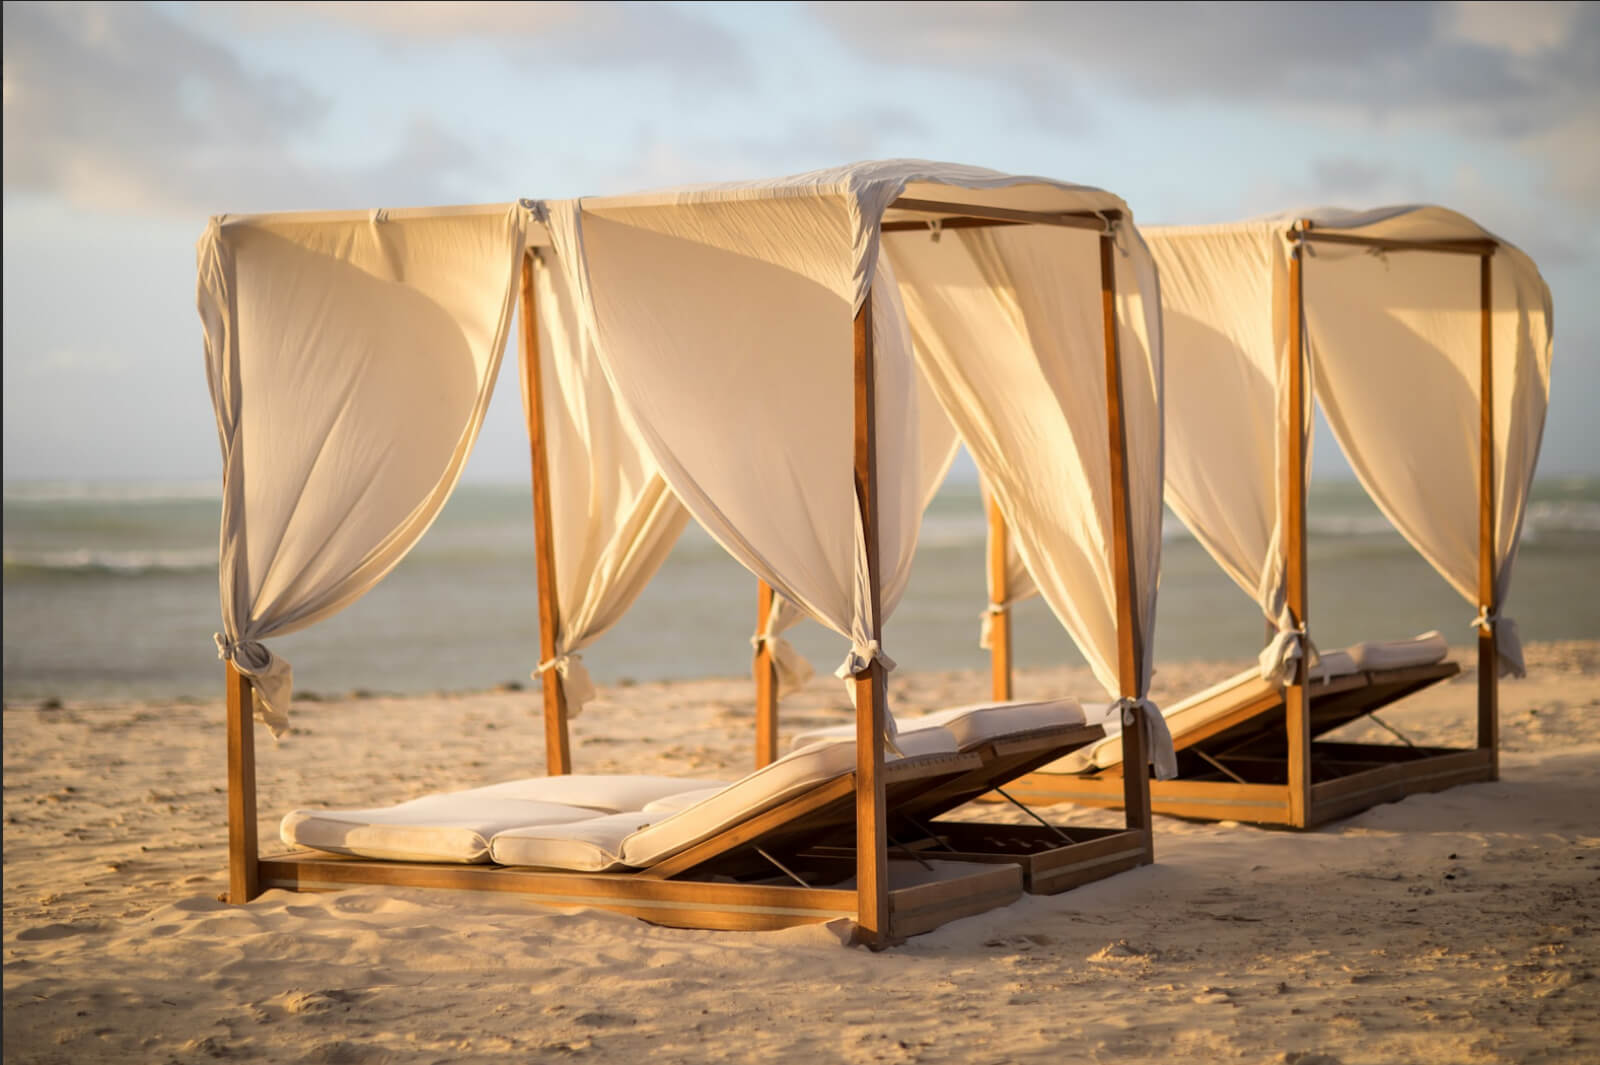 Departamento de lujo con club de playa, campo de golf y amenidades de hotel, en venta Playa del Carmen.